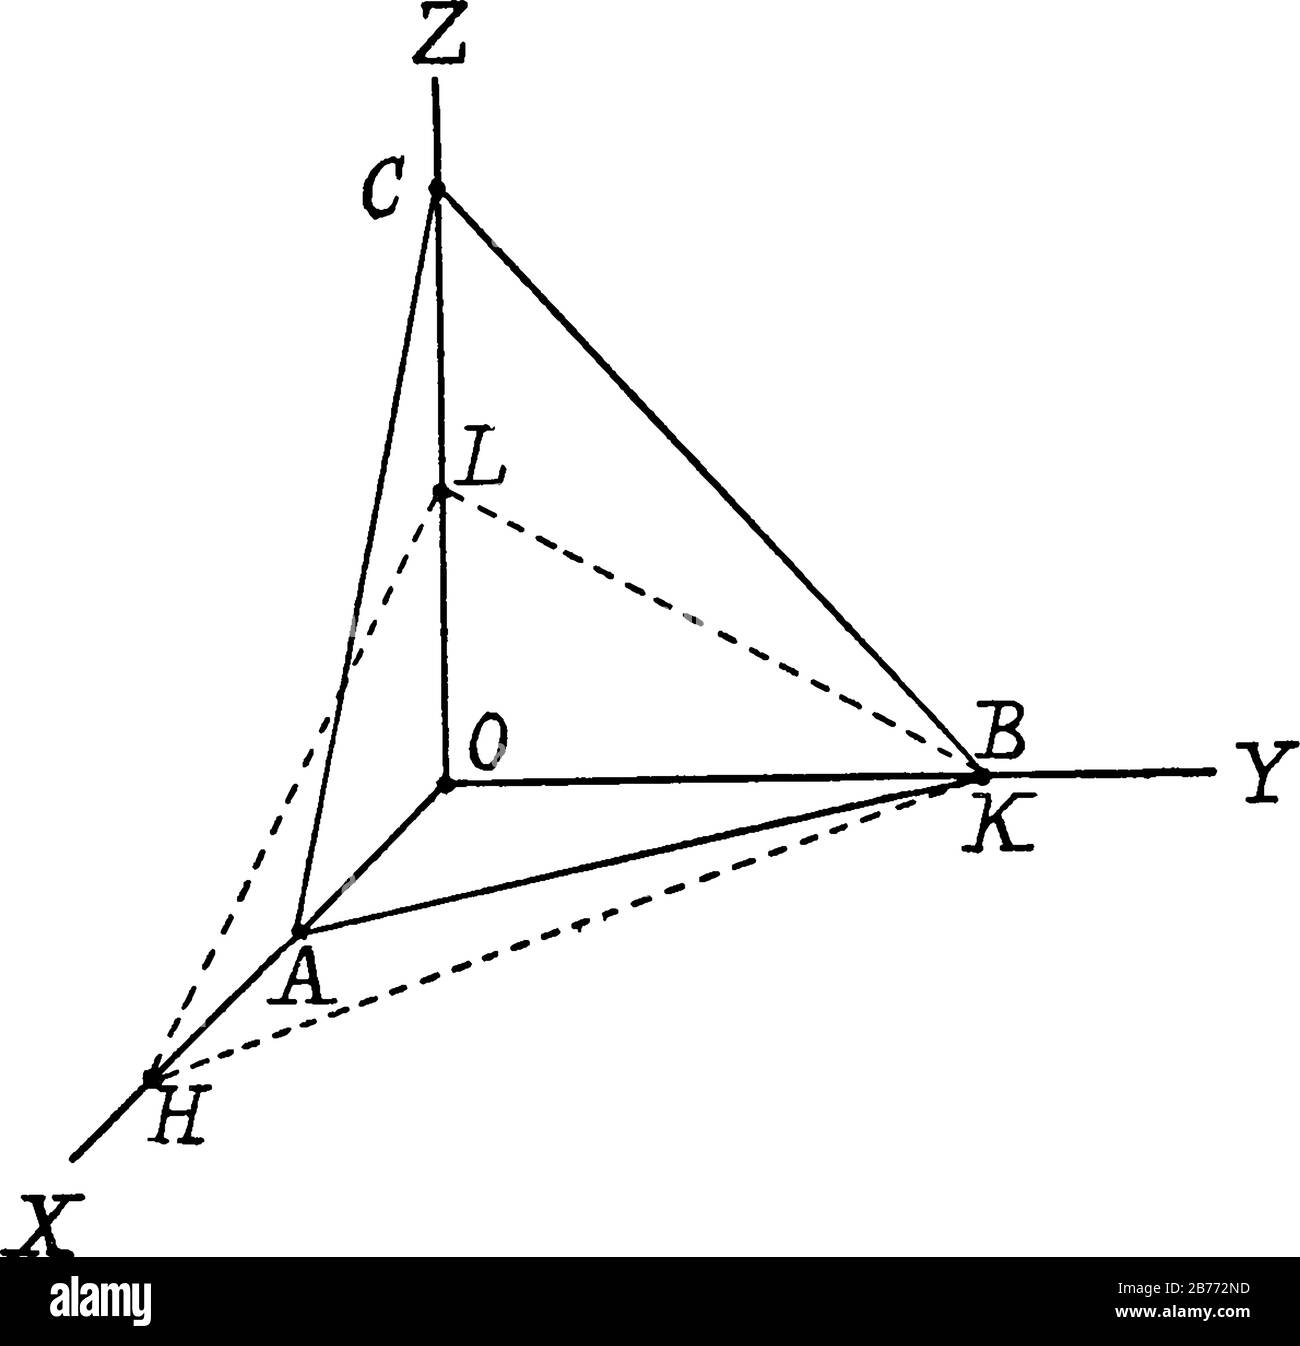 Un piano di coordinate cartesiano tridimensionale con asse x, asse y e asse z, disegno a linee vintage o illustrazione di incisione. Illustrazione Vettoriale